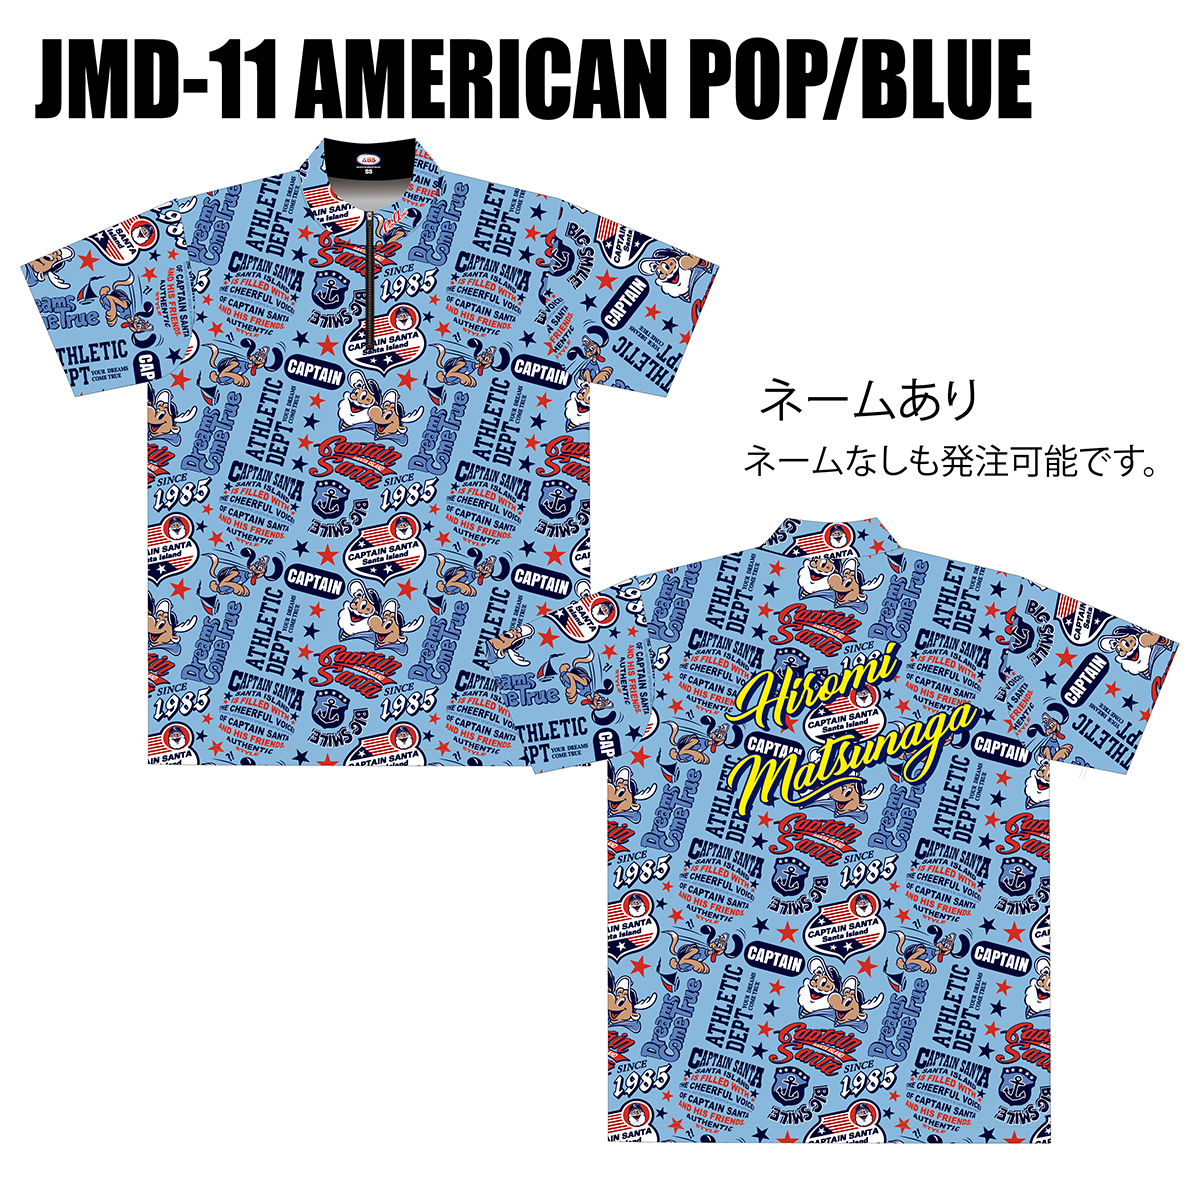 2023キャプテンサンタ(JMD-11・AMERIKAN POP/BLUE)